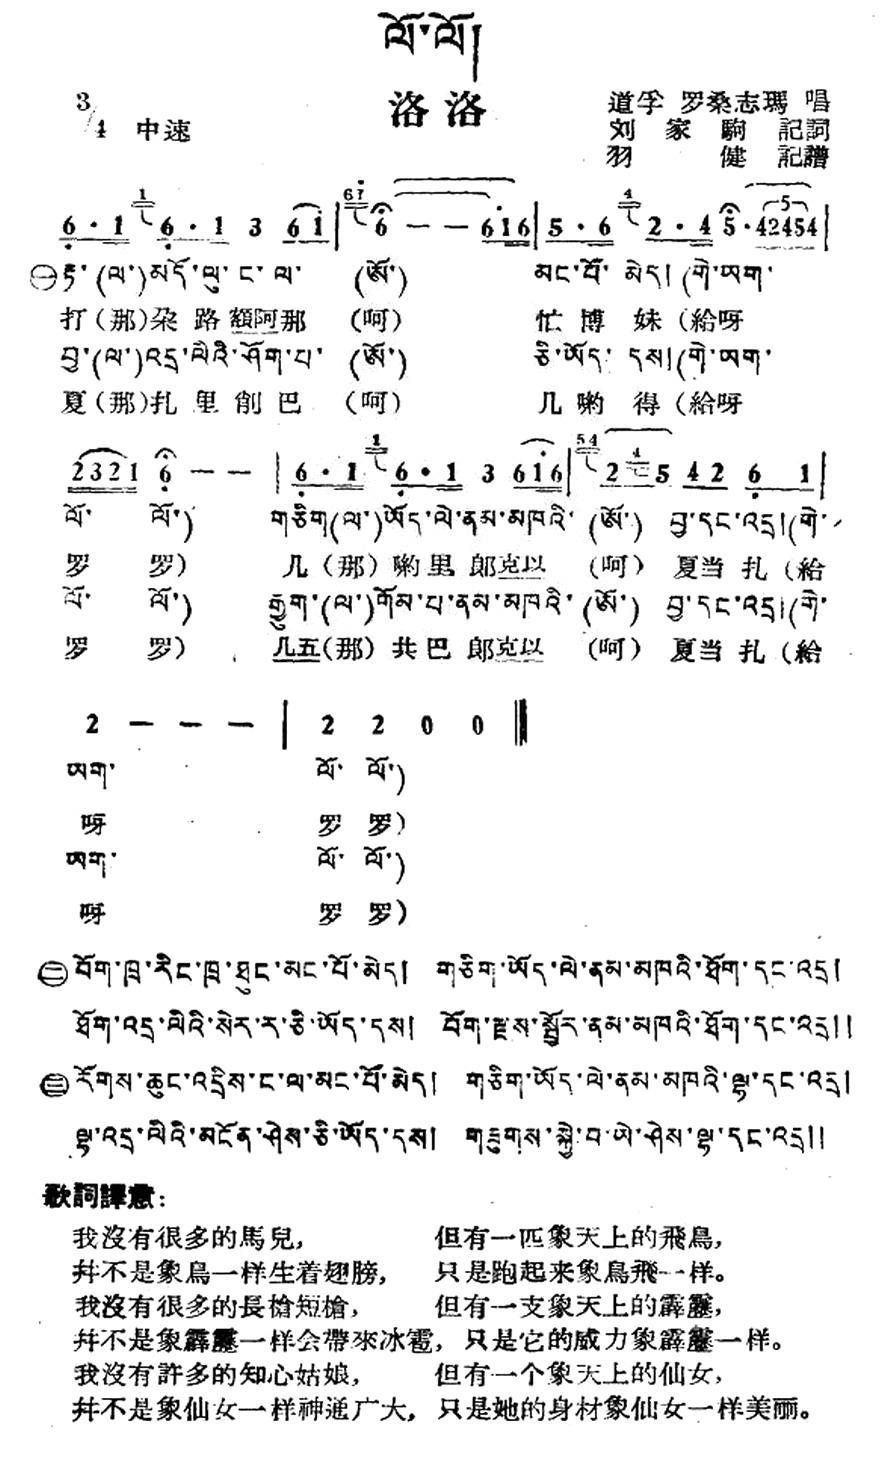 洛洛（藏族民歌、藏文及音译版）(1).jpg